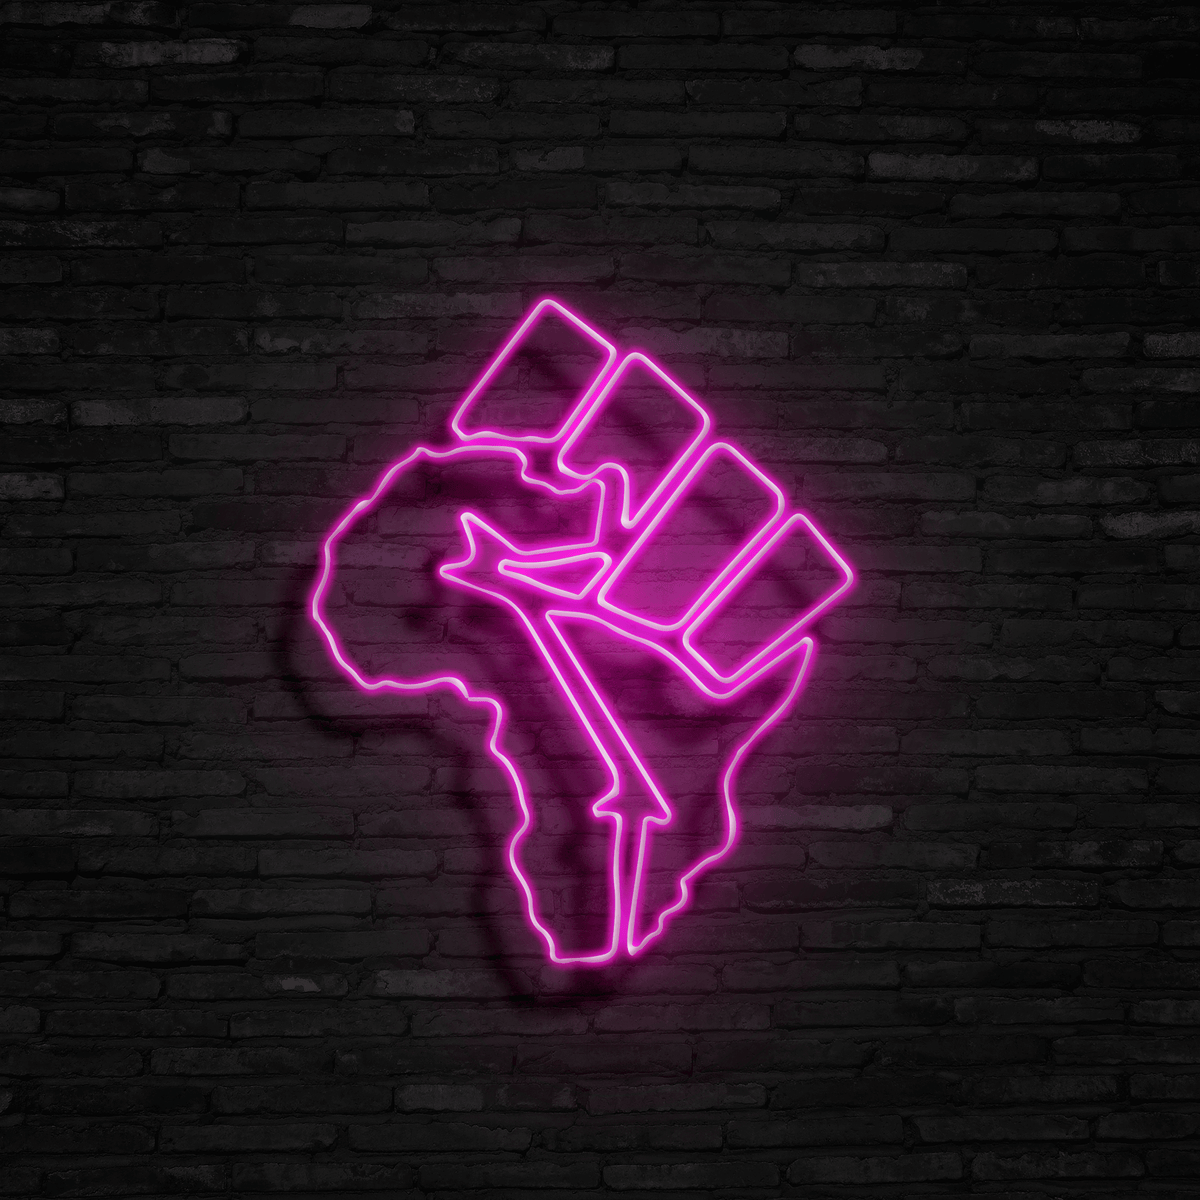 Black Lives Matter - Neon Sign